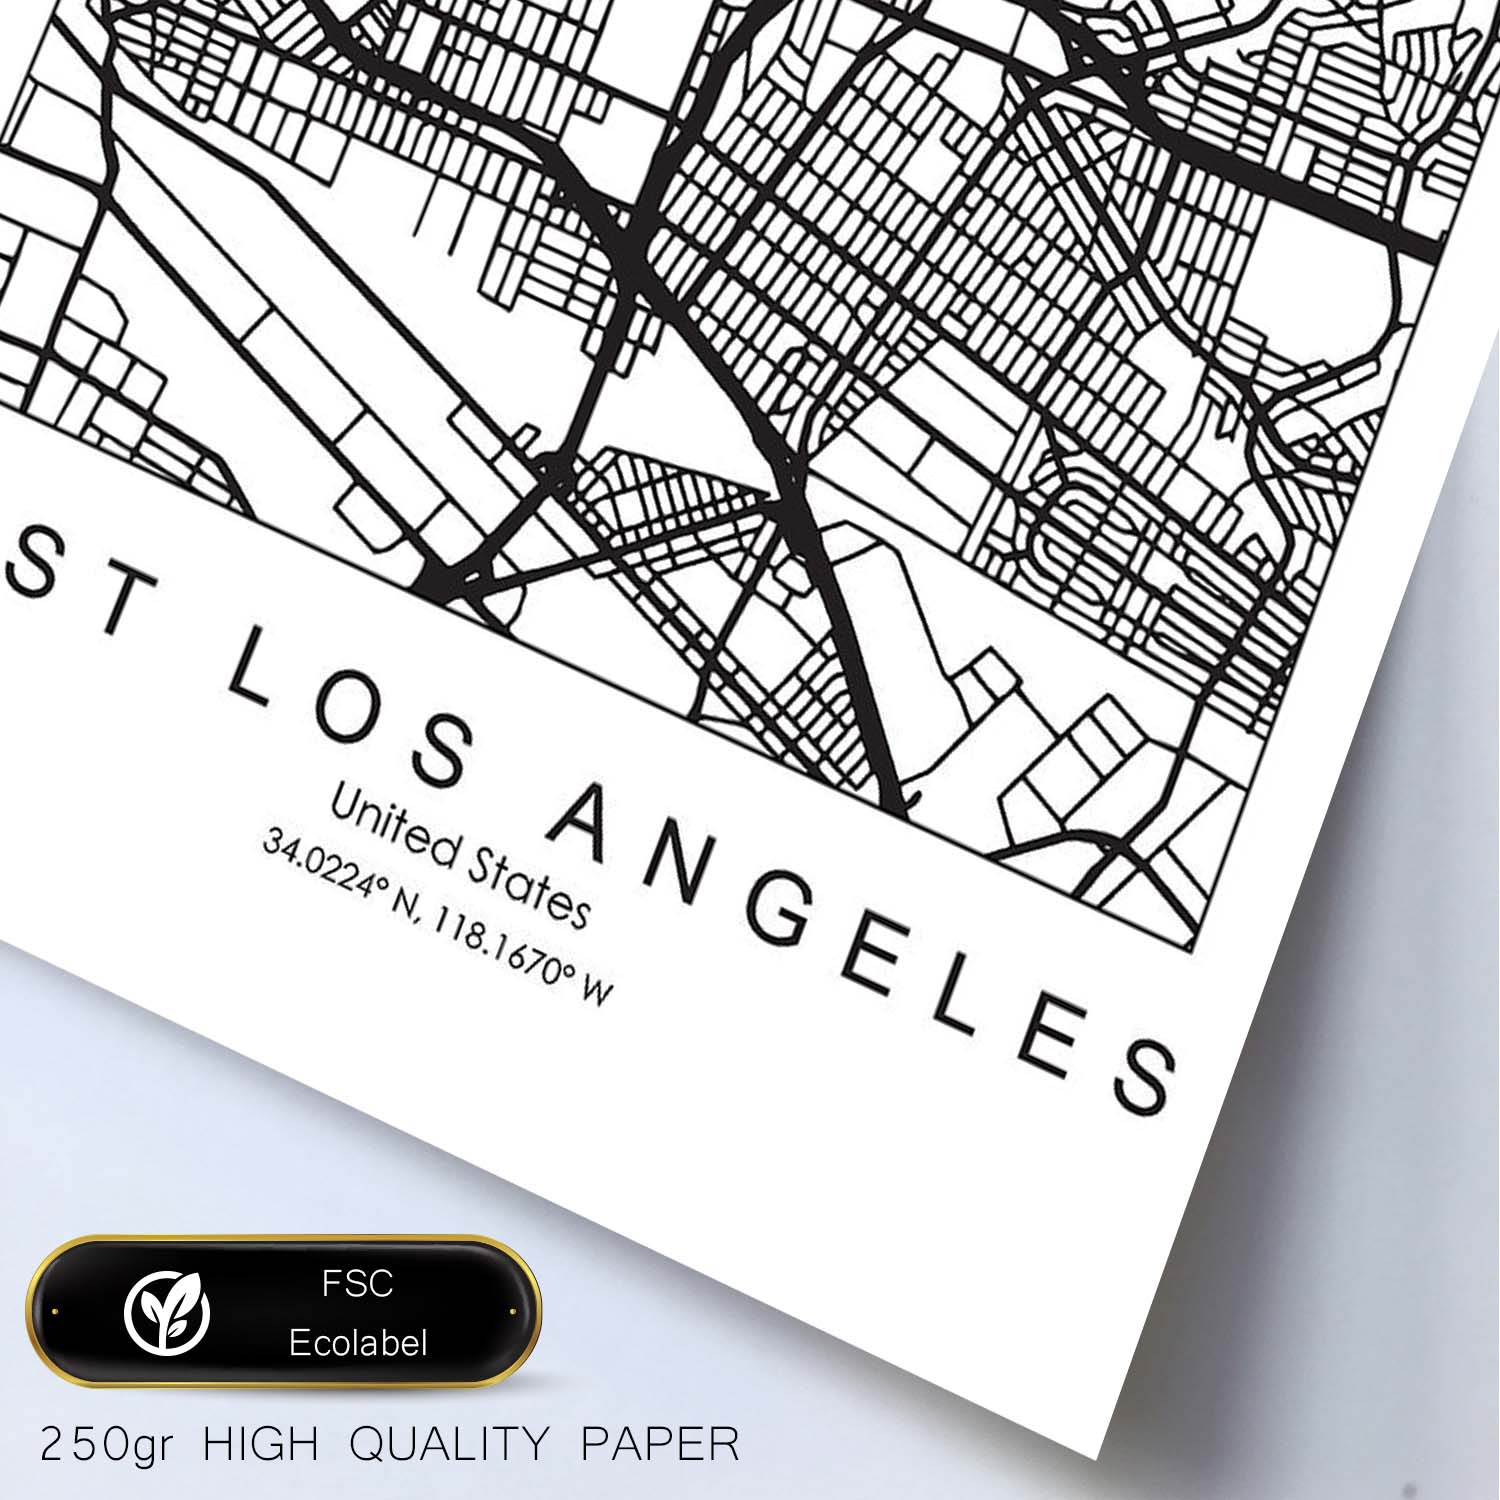 Poster con mapa de East Los Angeles. Lámina de Estados Unidos, con imágenes de mapas y carreteras-Artwork-Nacnic-Nacnic Estudio SL